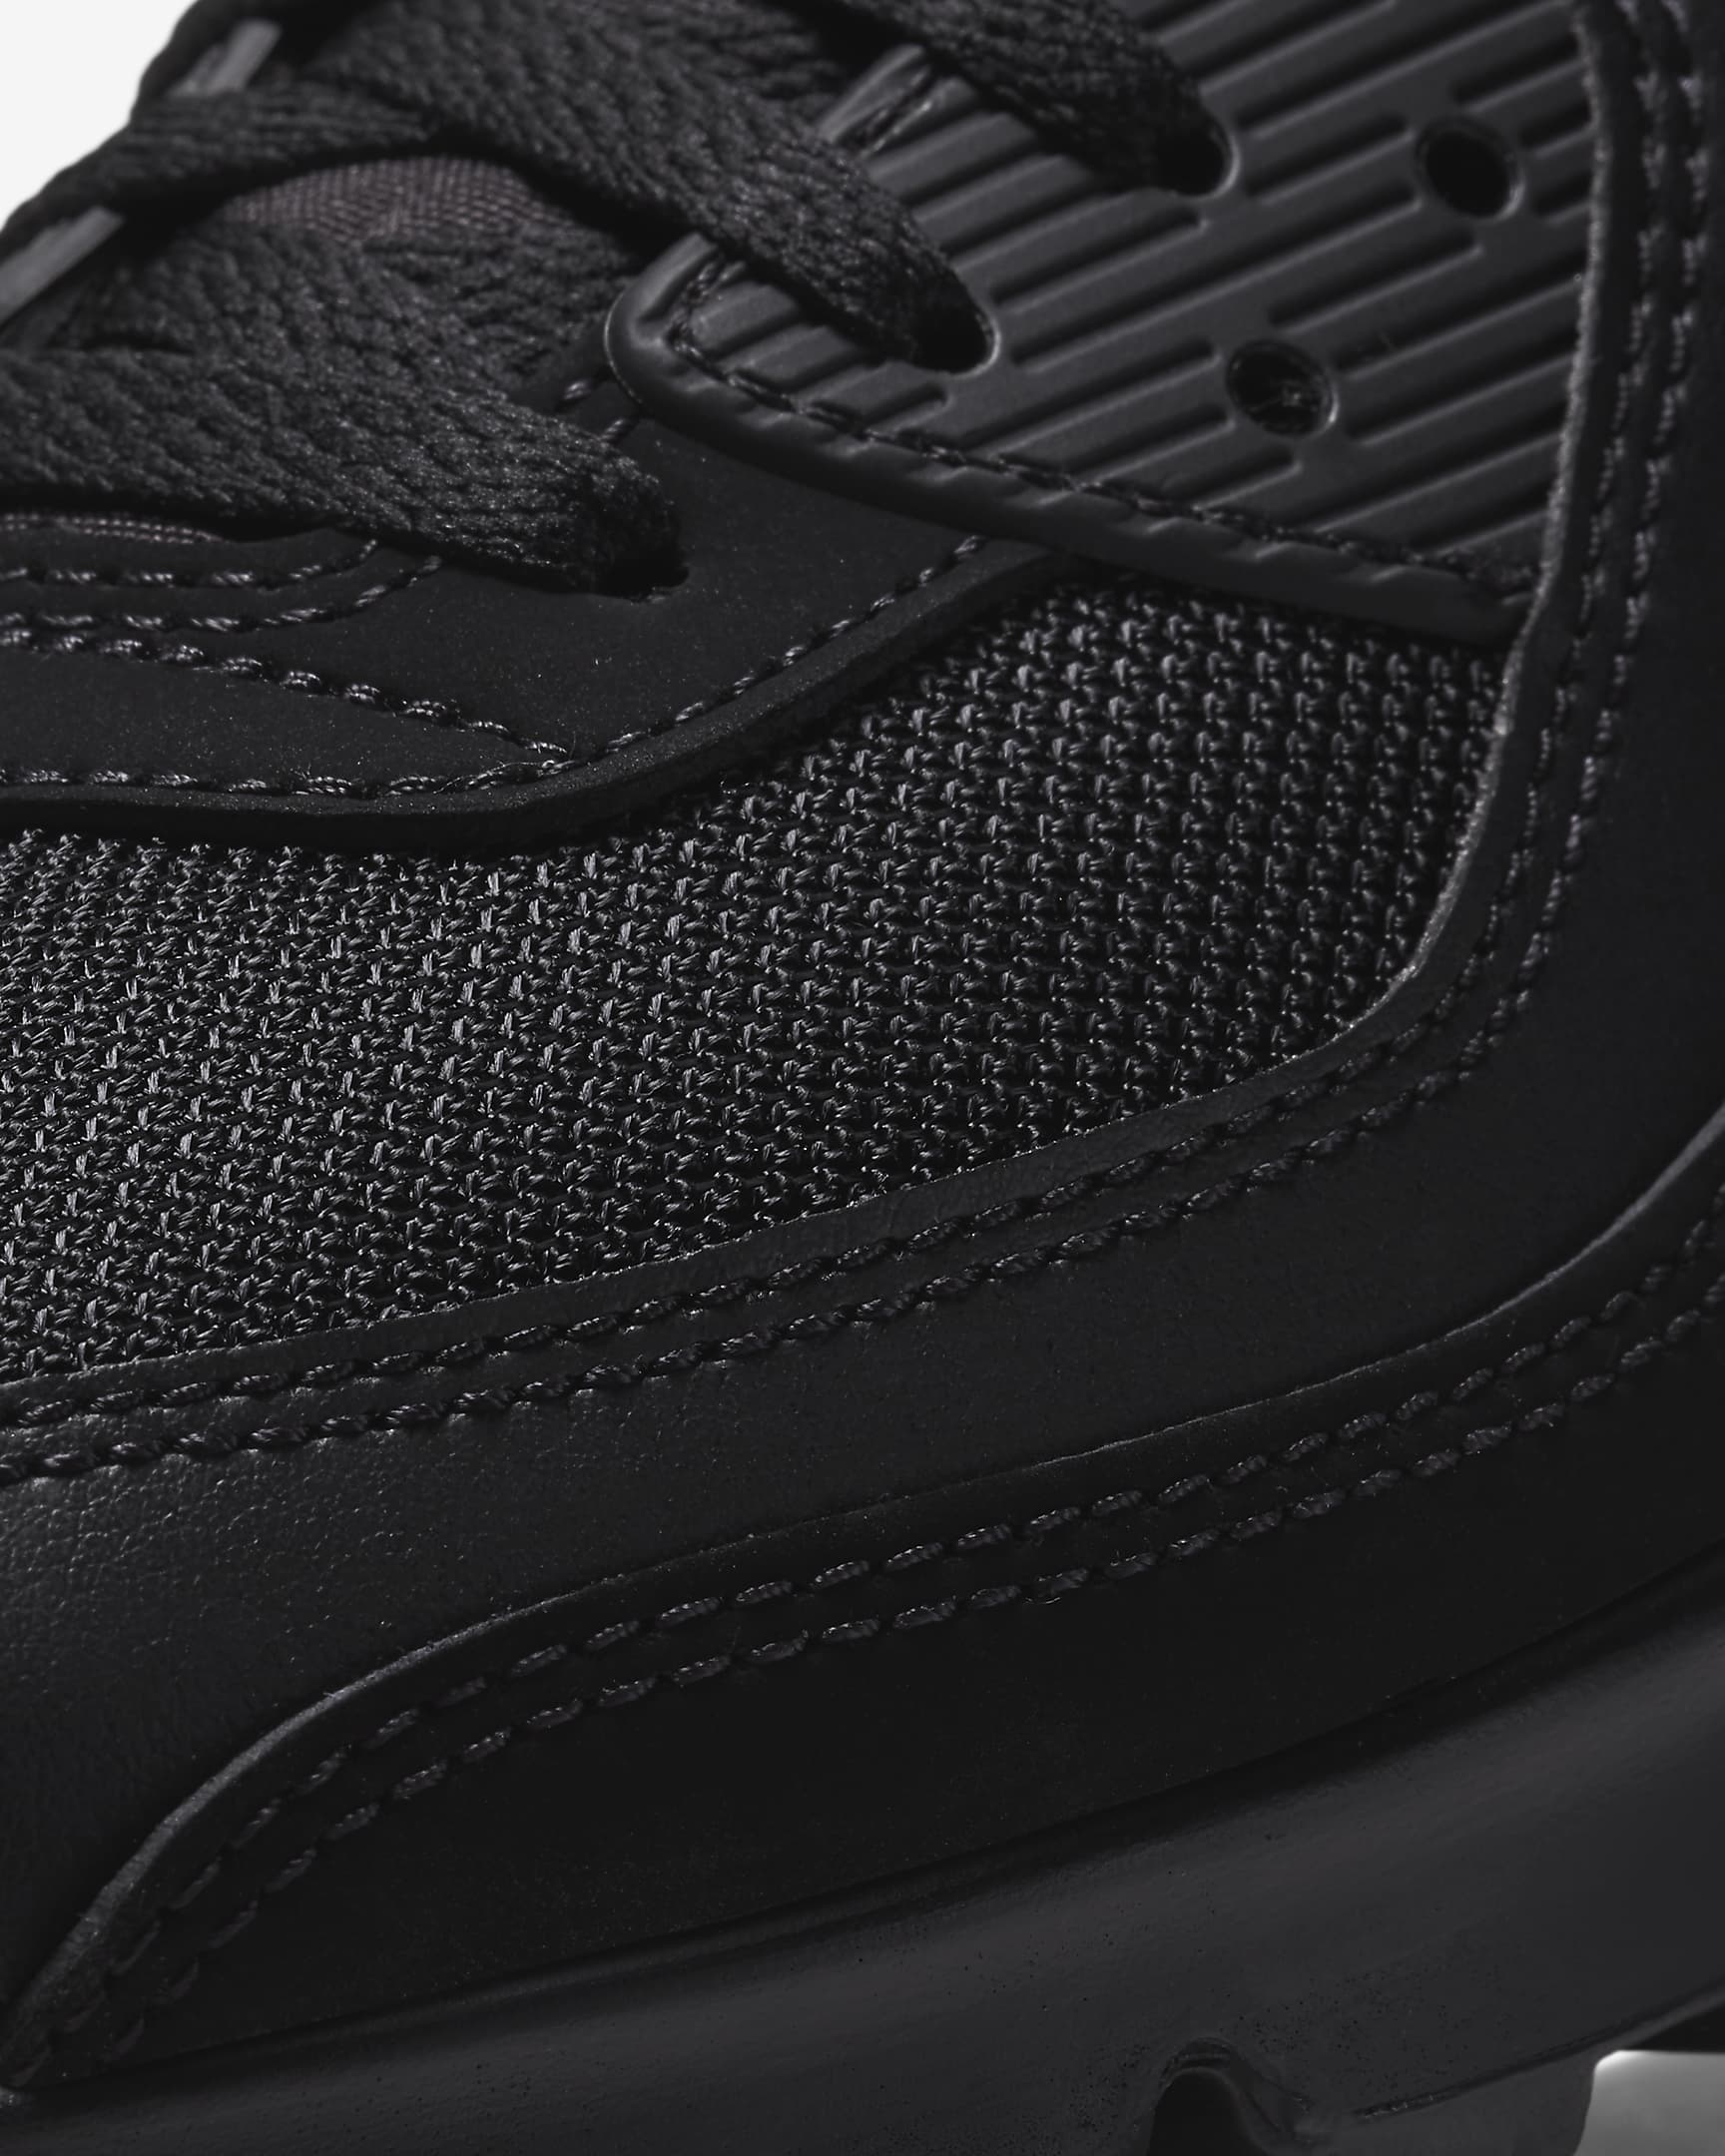 Nike Air Max 90 Men's Shoes - Black/Black/Black/Black